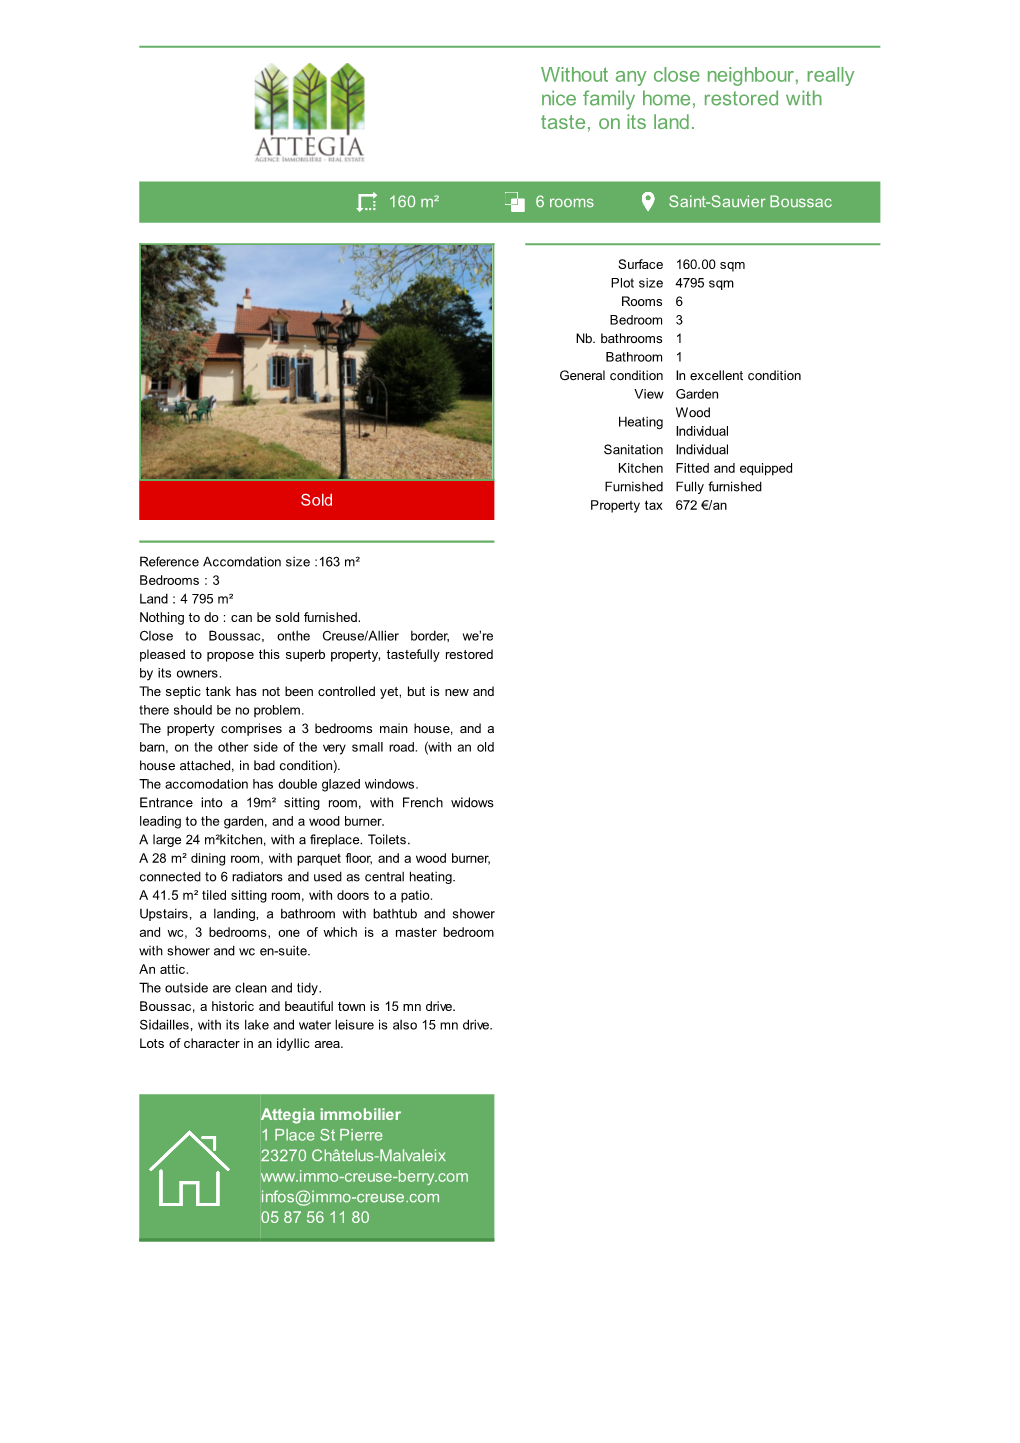 House Detached for Sale Saint-Sauvier Boussac Attegia Immobilier